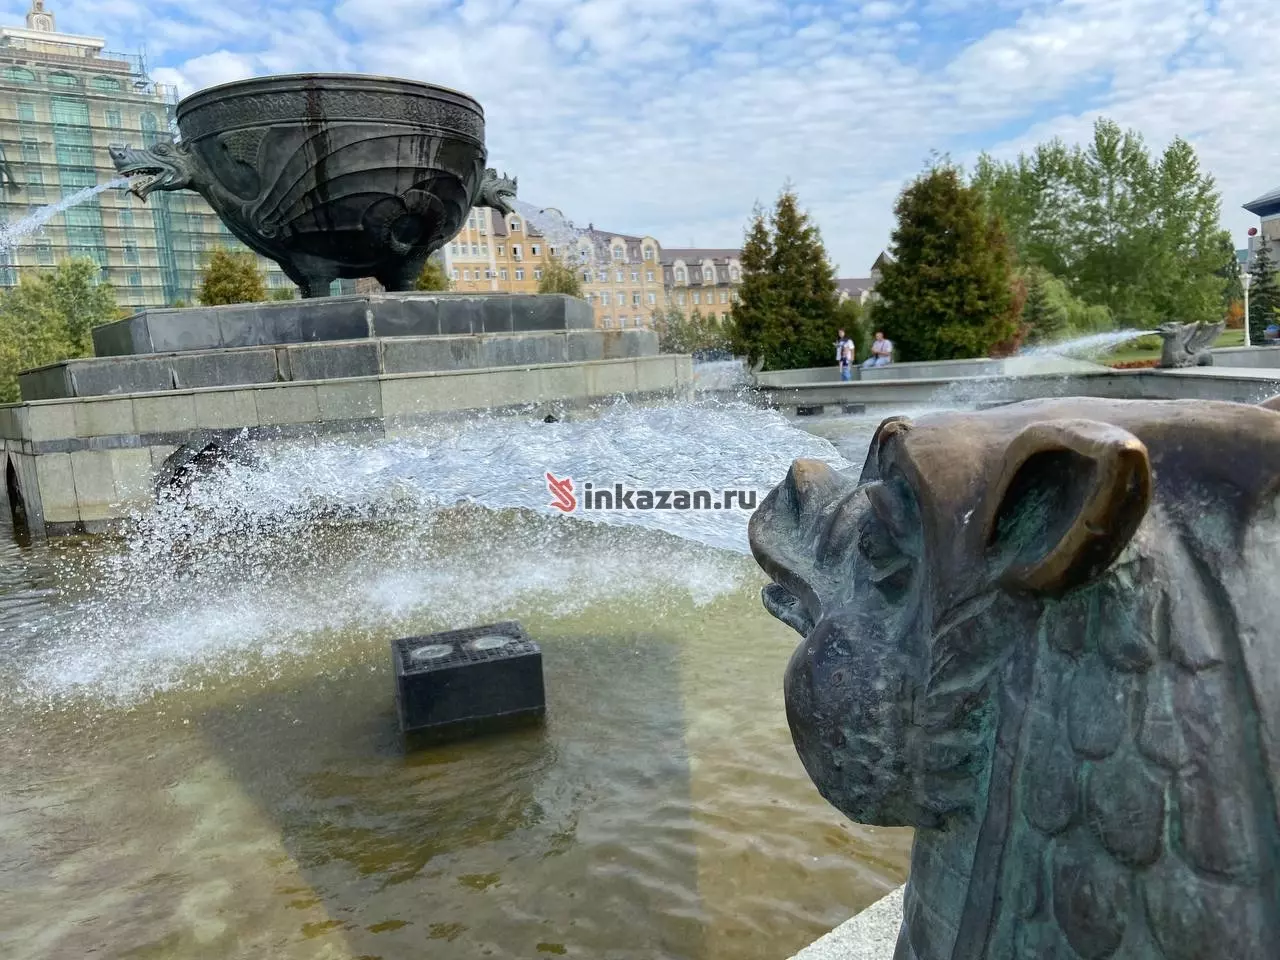 Из развлечений в парке есть лишь лавочки, фонтан и памятник Кул Гали.